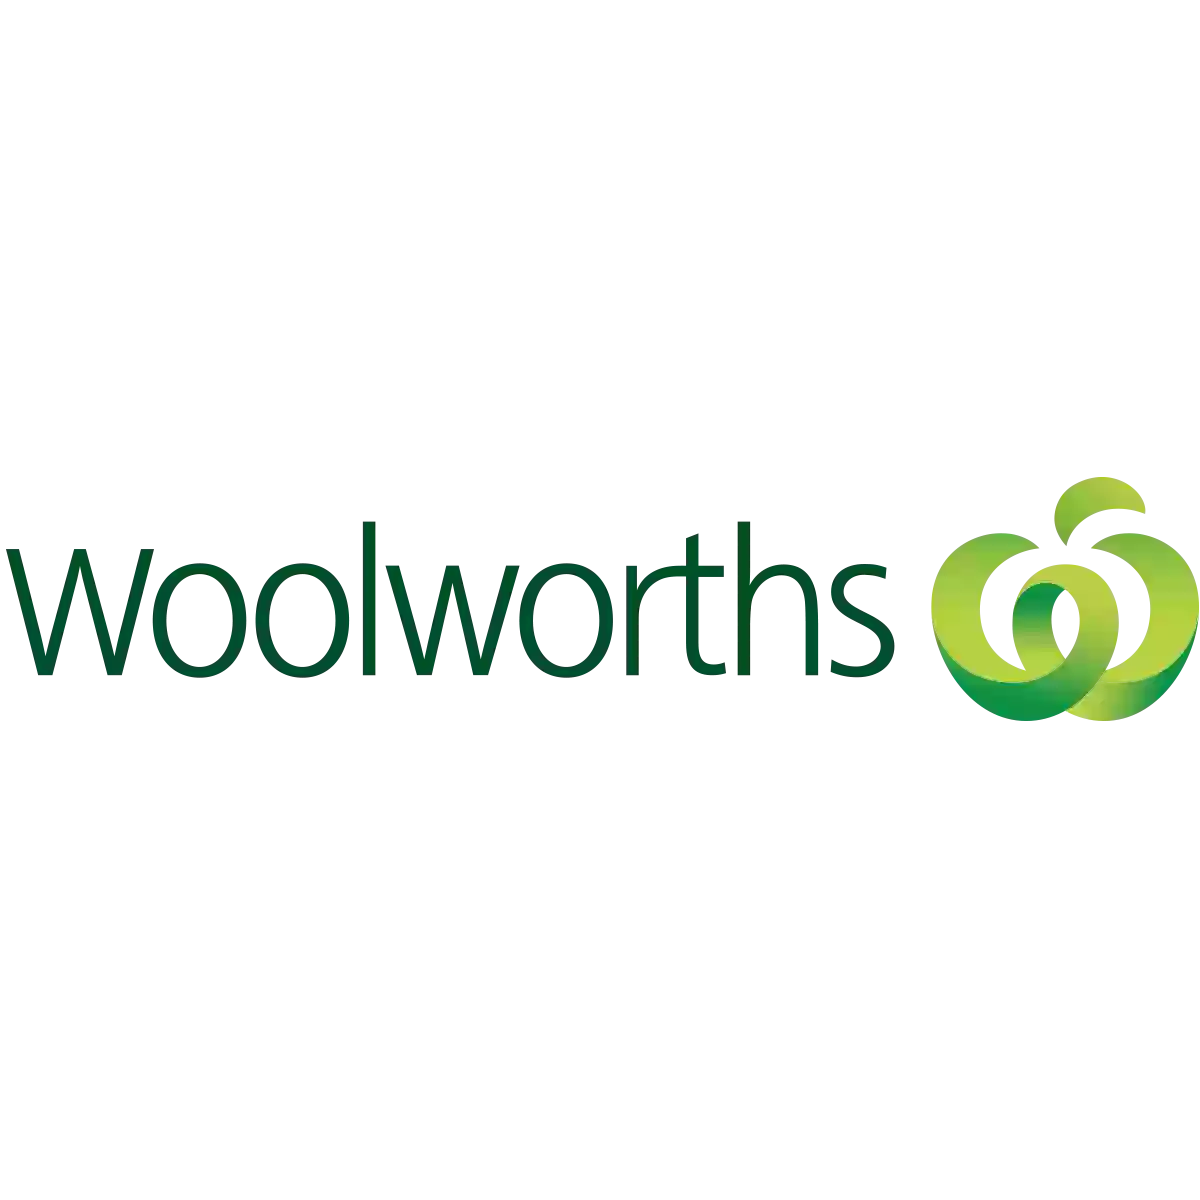 Woolworths Karrinyup